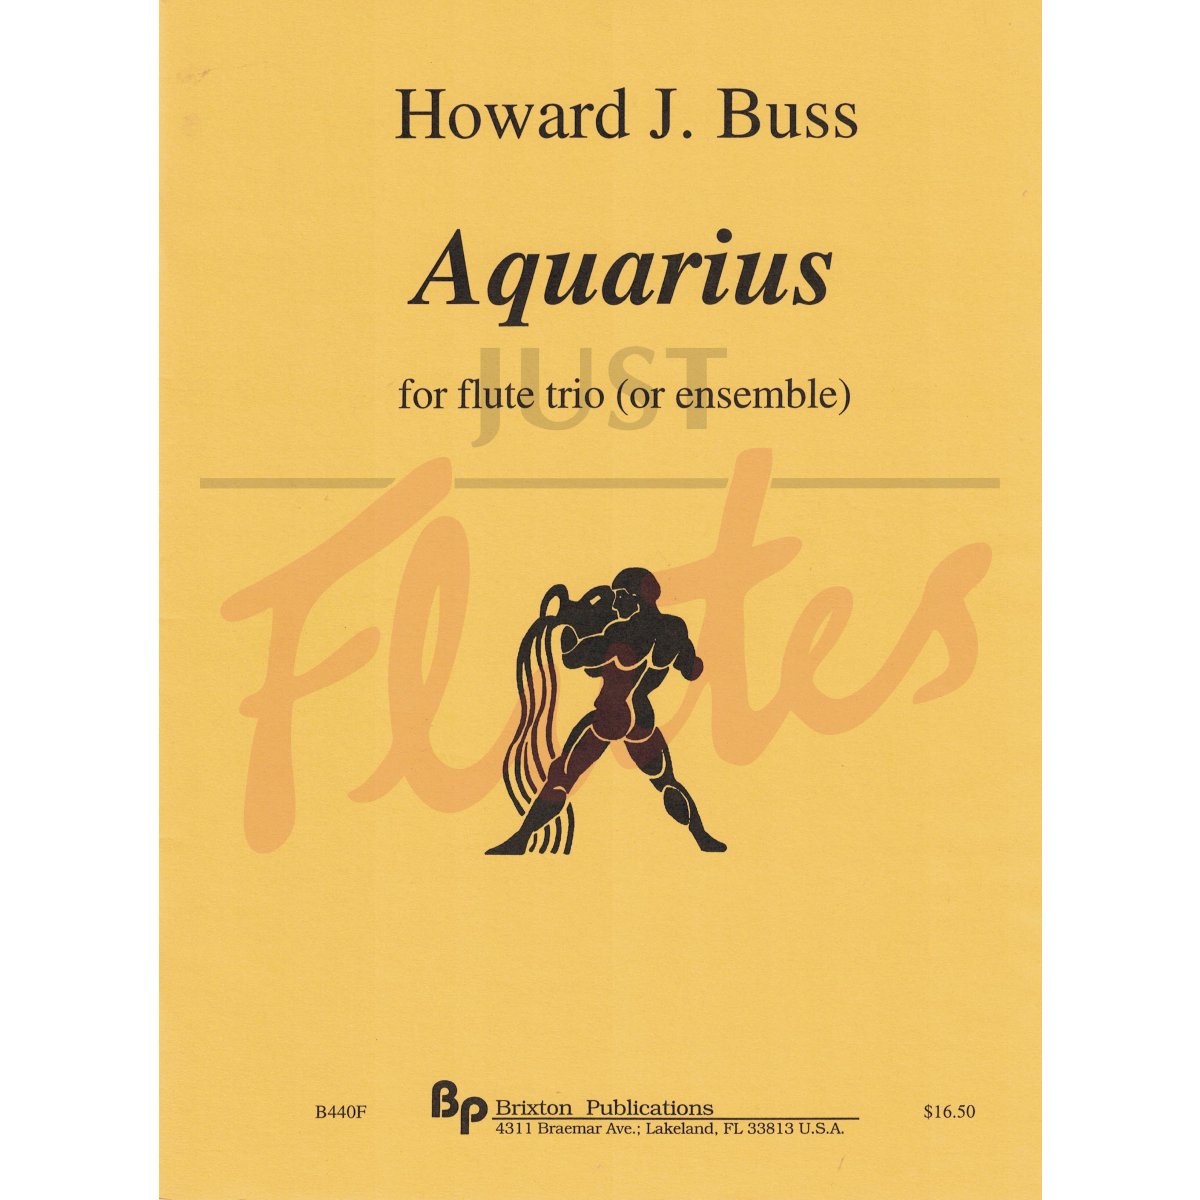 Aquarius for flute trio or ensemble